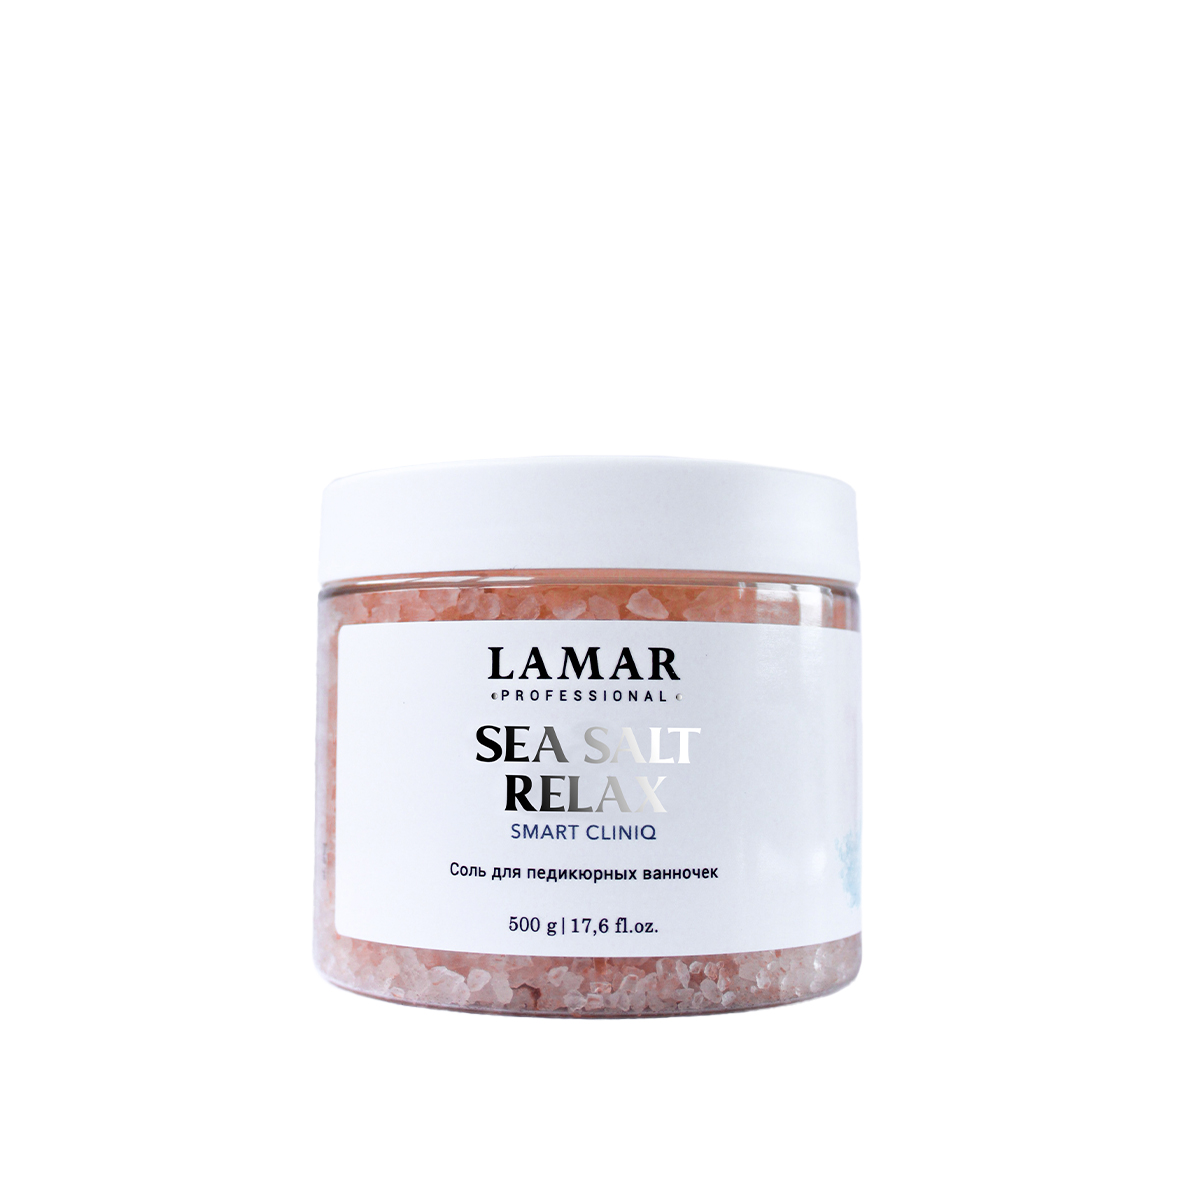 Соль для педикюрных ванночек Lamar Professional Sea salt relax 500 г depiltouch professional крем парафин лаванда exclusive series paraffin cream lavender